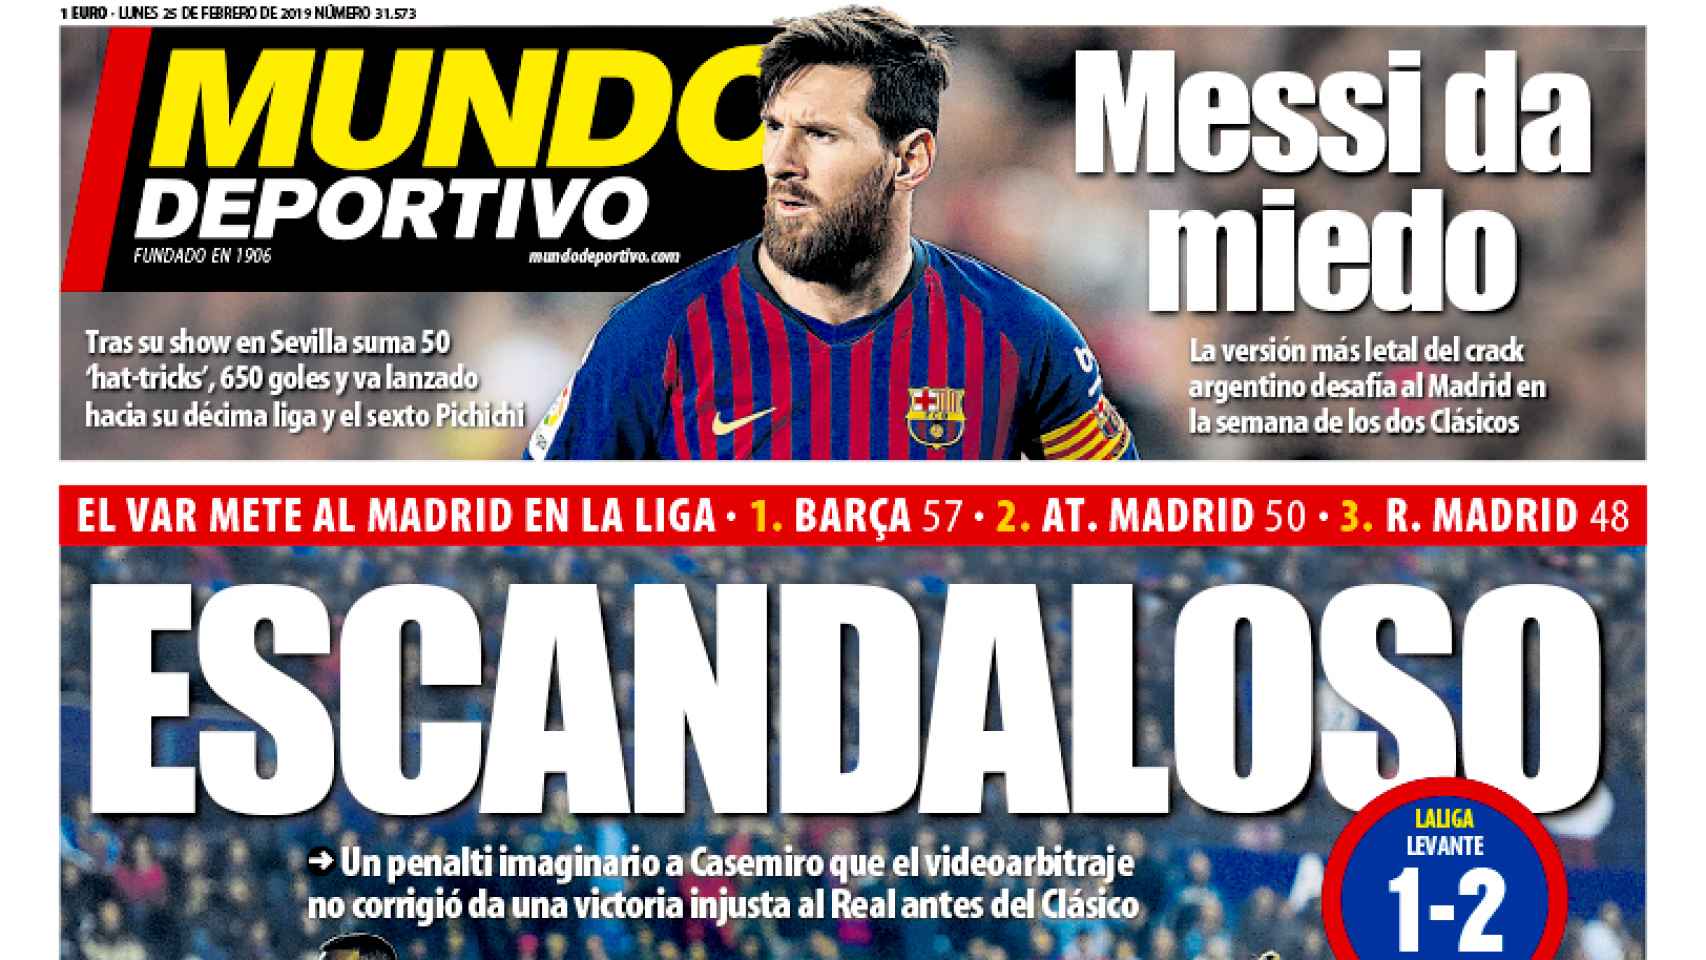 La portada del diario Mundo Deportivo (25/02/2019)